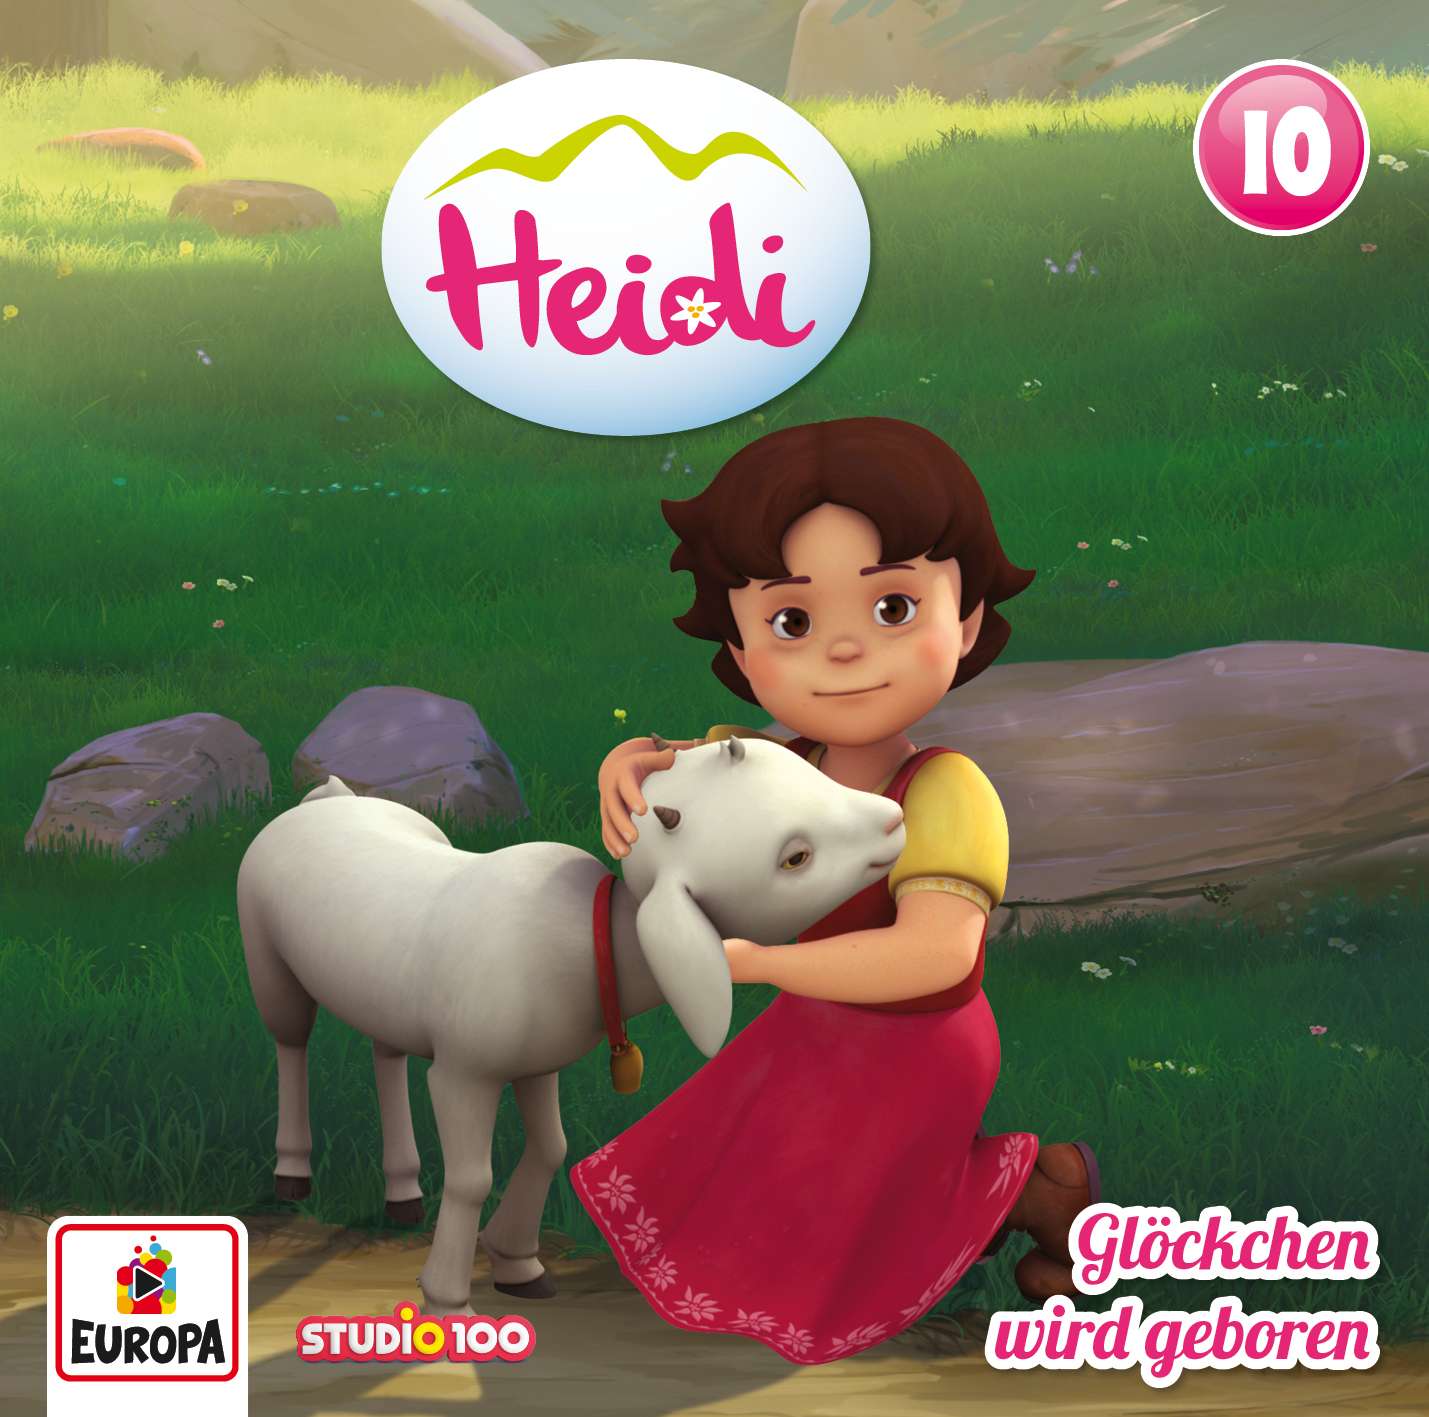 Heidi: Glöckchen wird geboren (CGI)